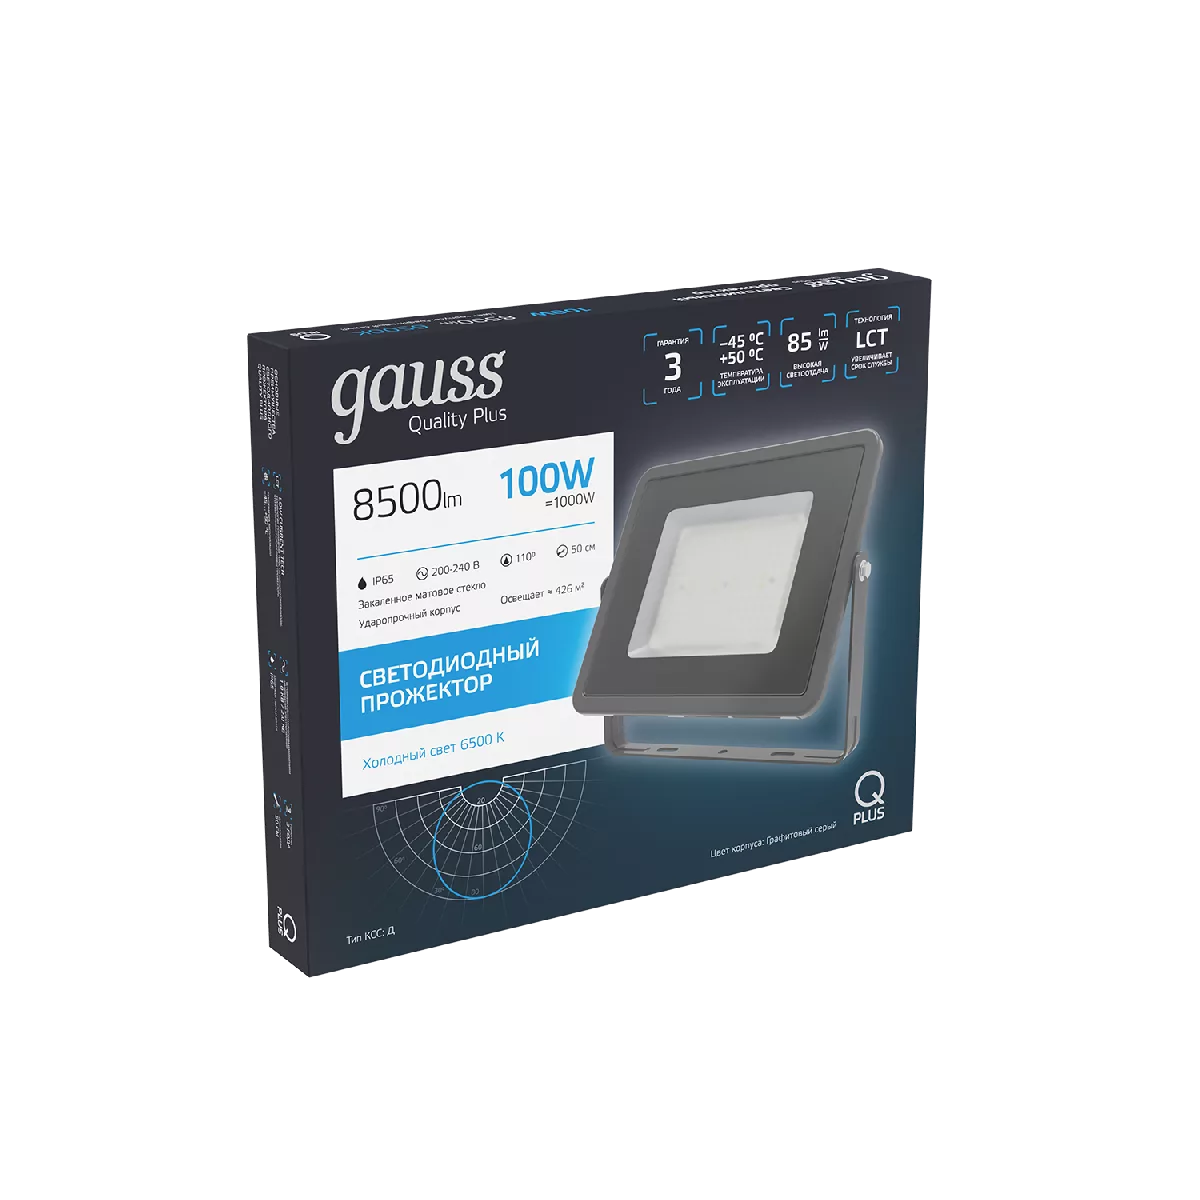 Прожектор Gauss Qplus 100W 8500lm 6500K 175-265V IP65 графитовый LED 1/4